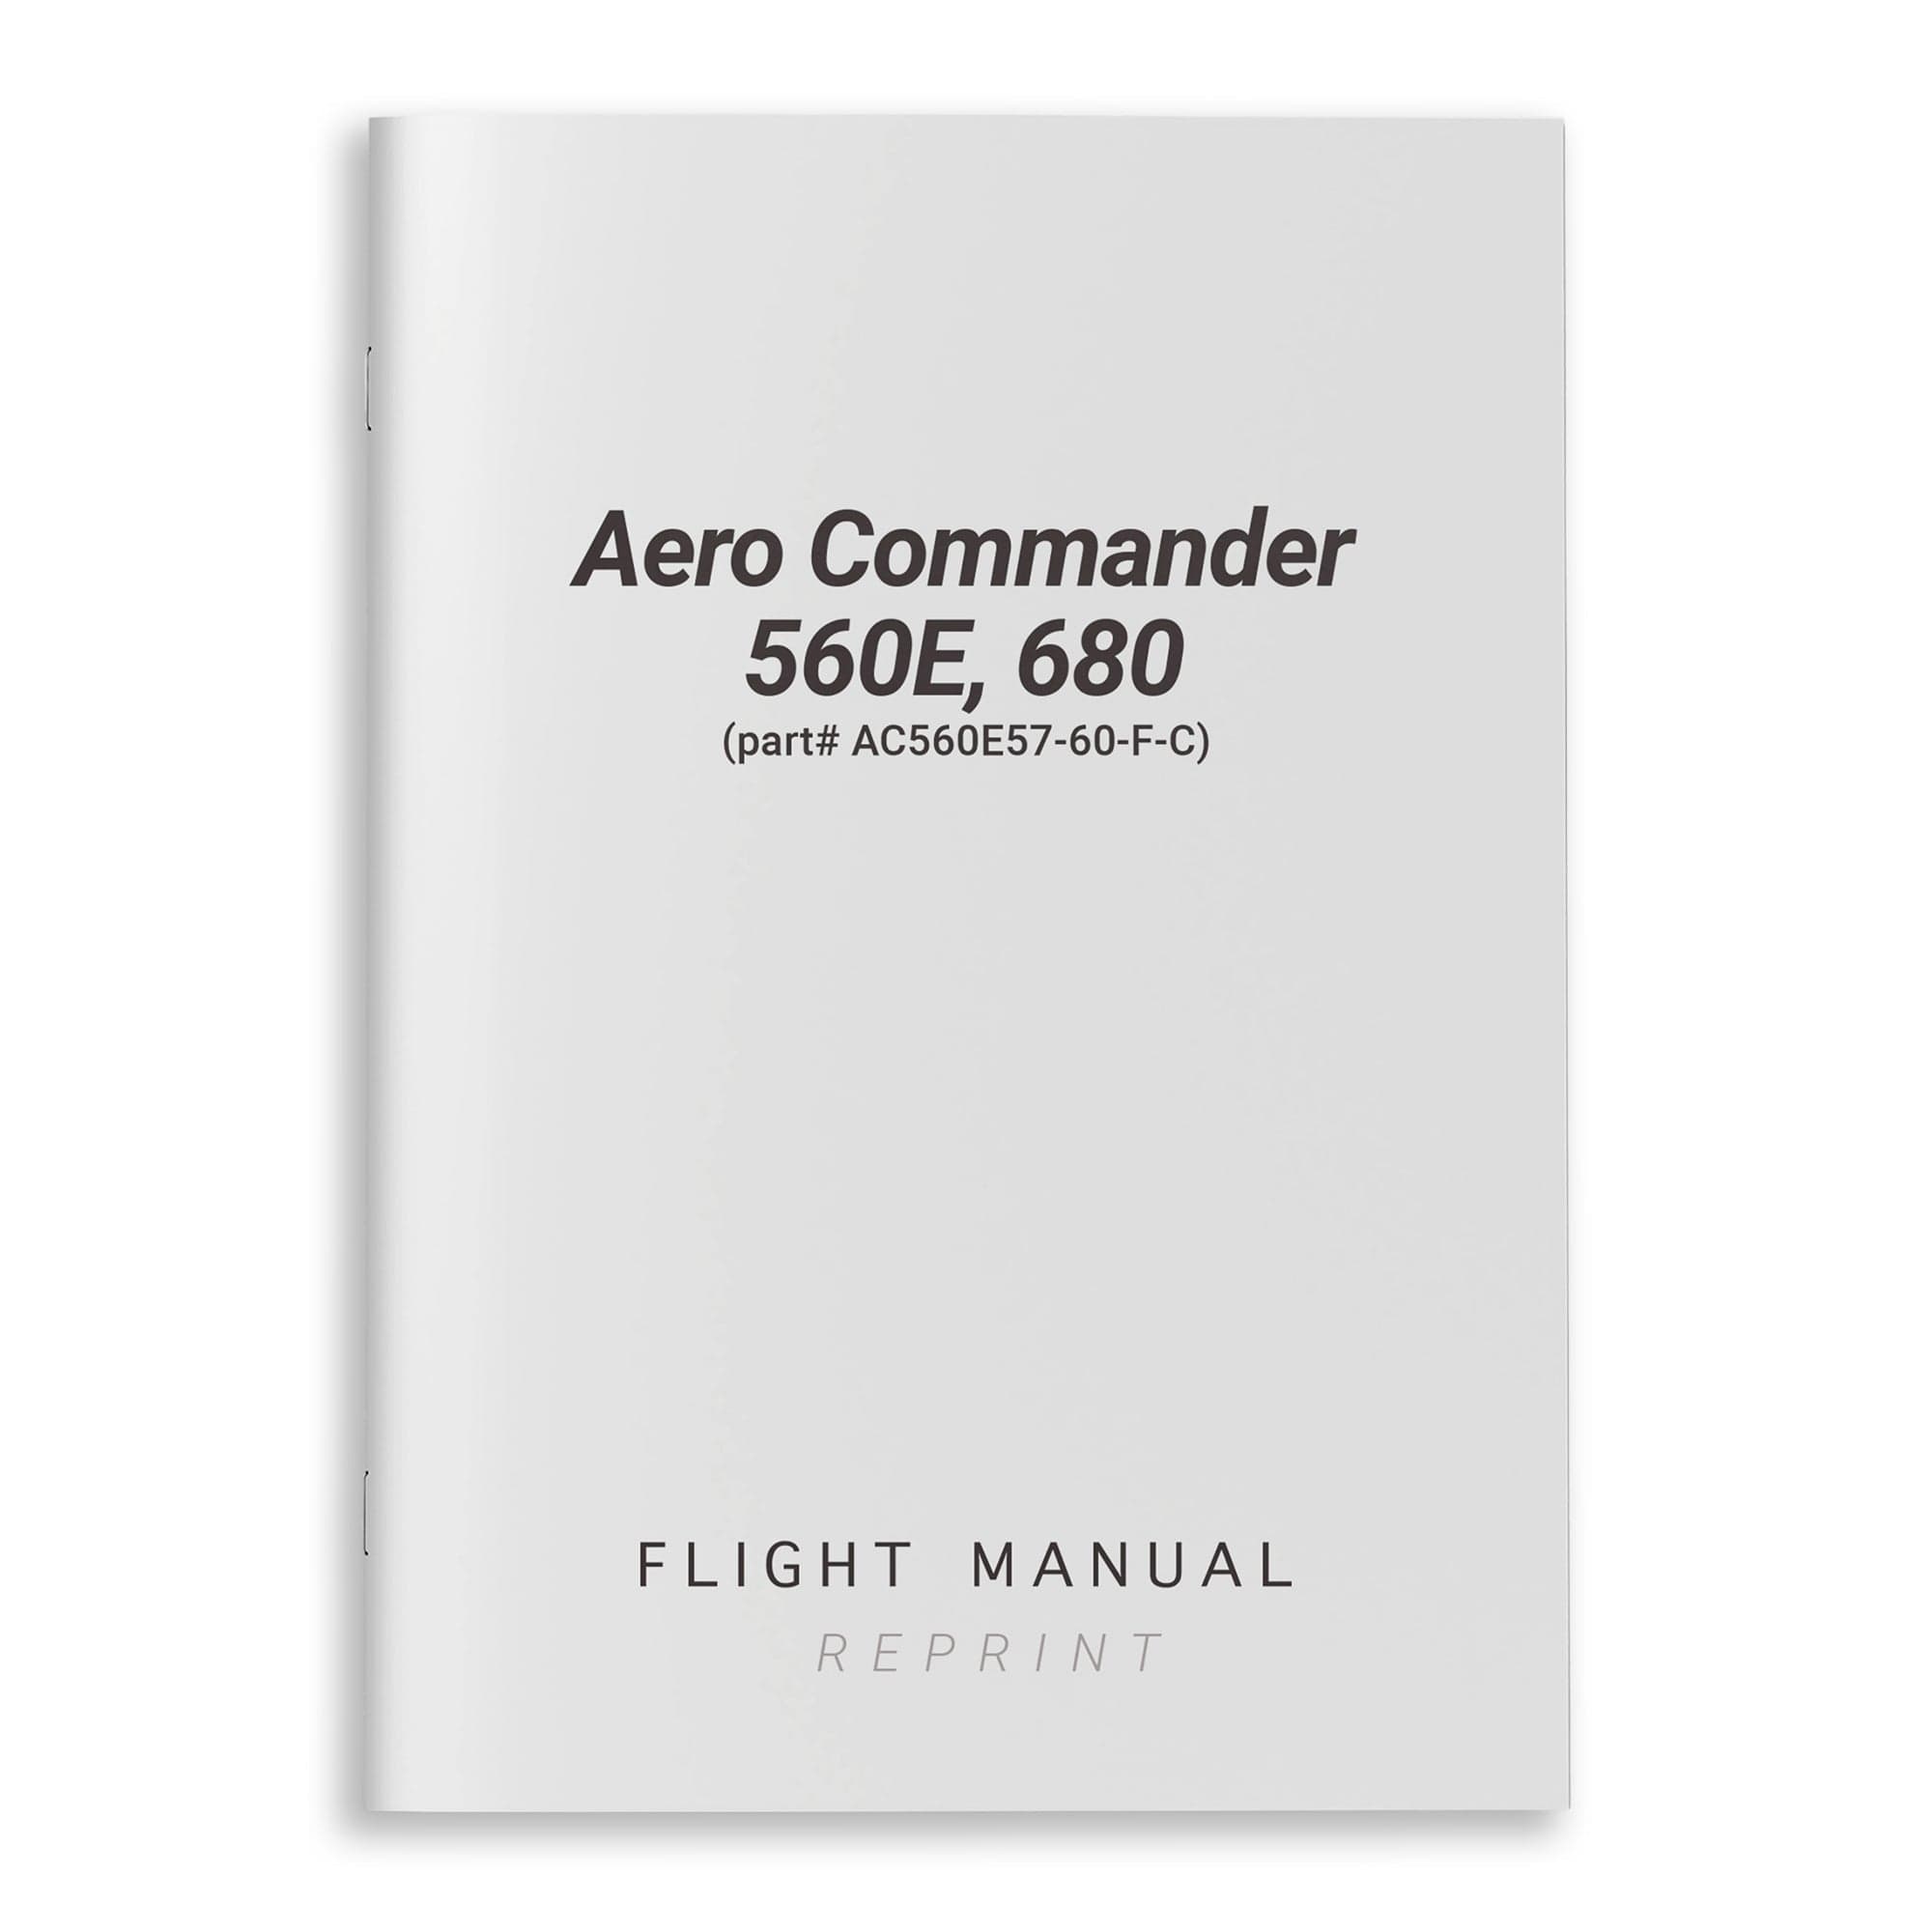 Aero Commander 560E, 680 Flight Manual (part# AC560E57-60-F-C)